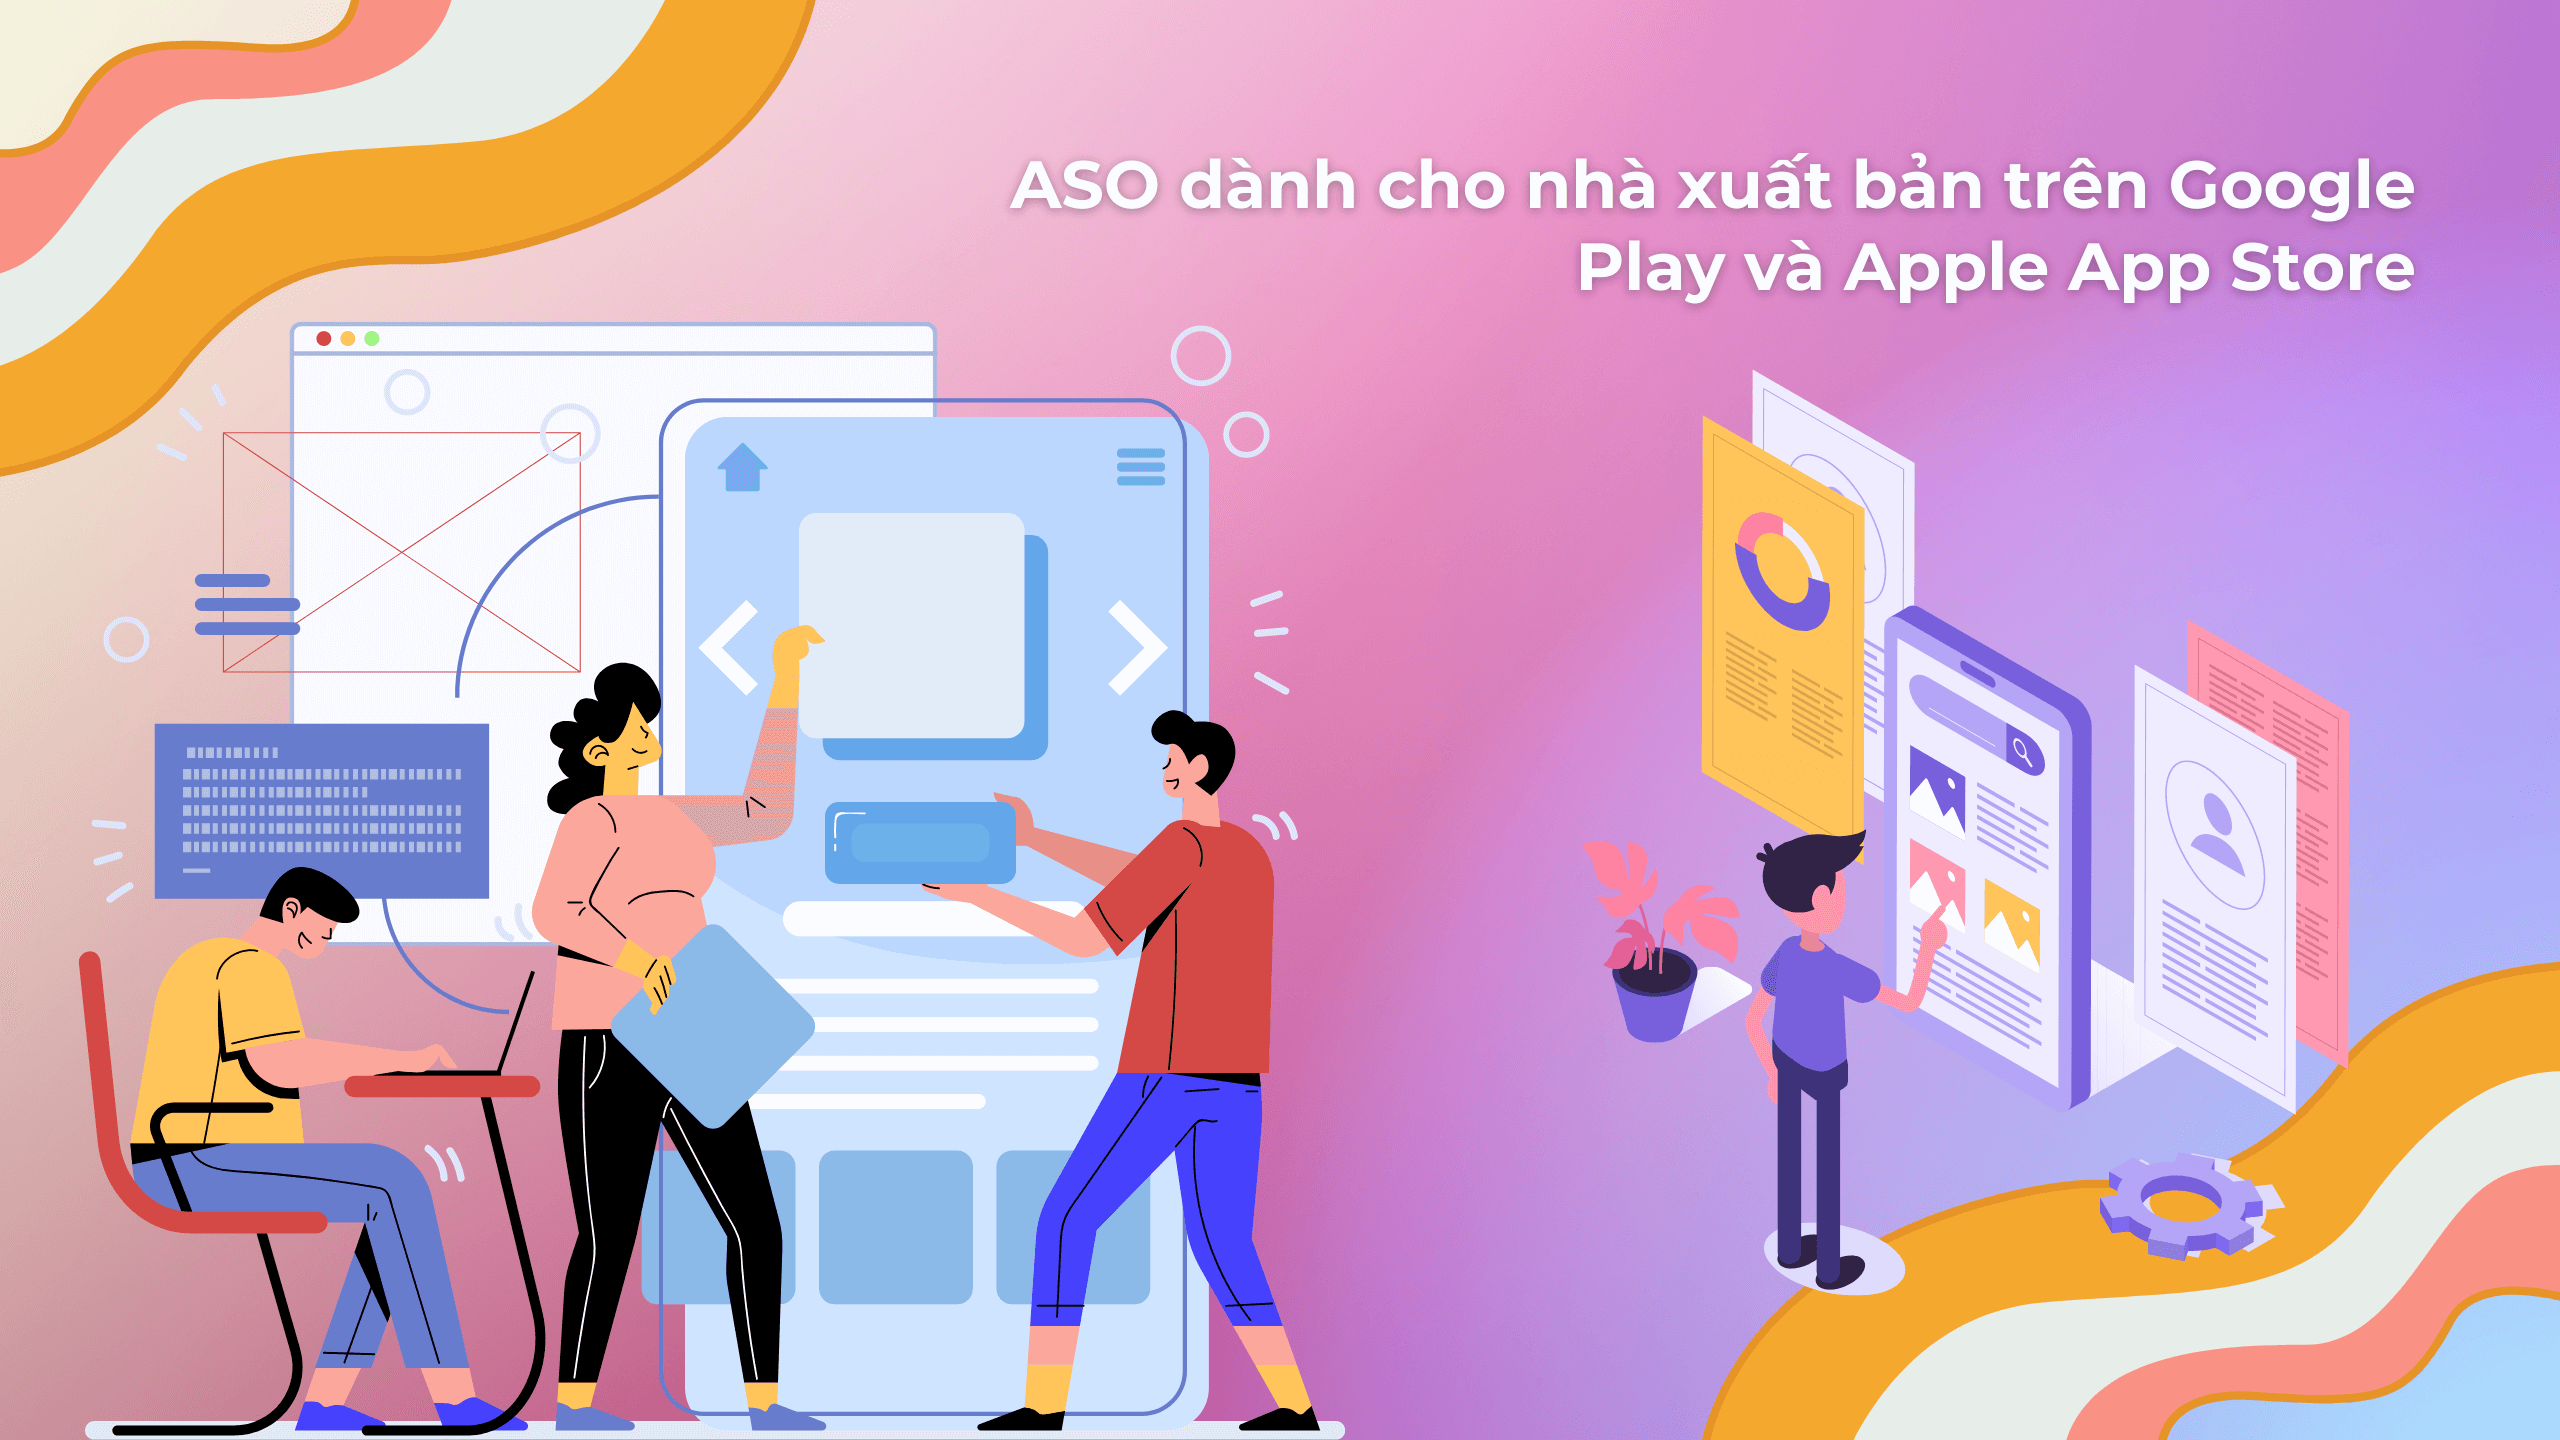 ASO dành cho nhà xuất bản trên Google Play và Apple App Store